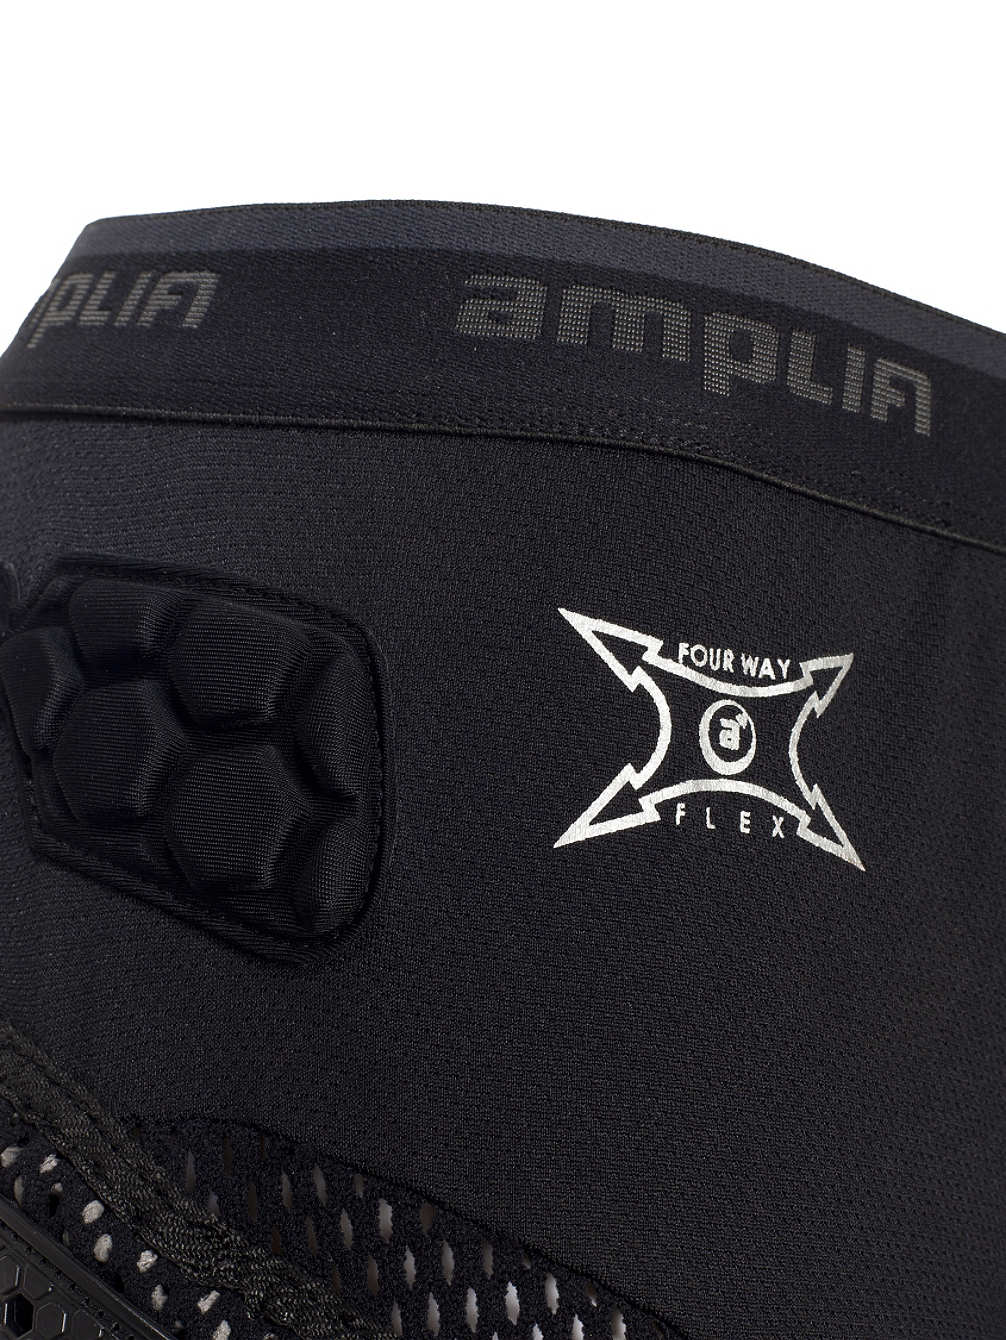 Защитные шорты Amplifi 2016-17 Fuse Pant black